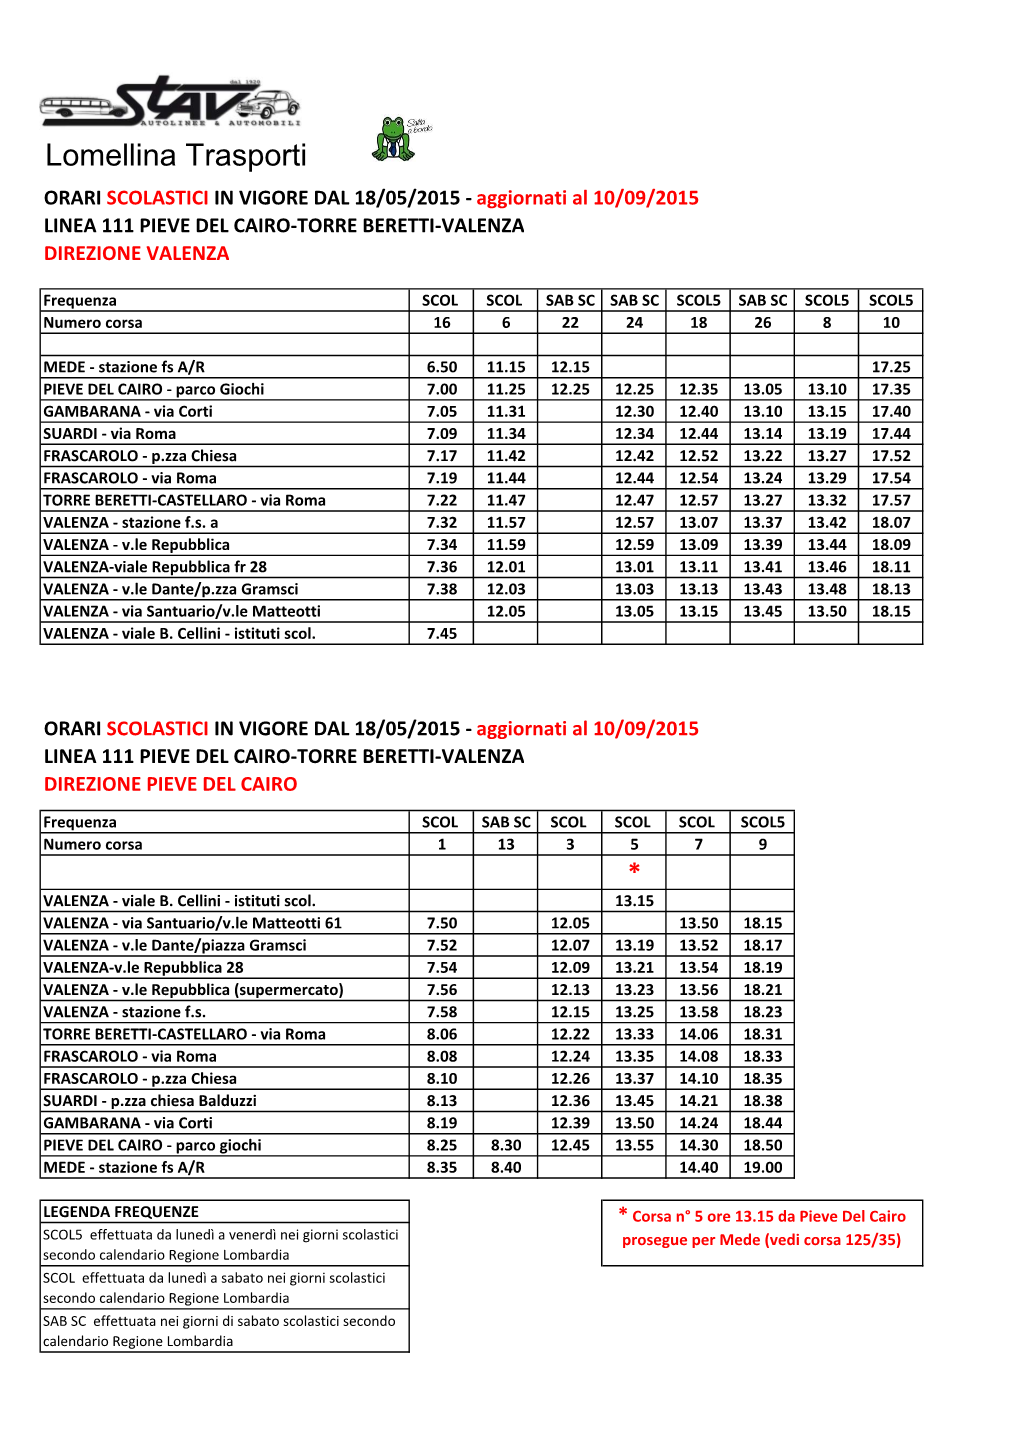 Lomellina Trasporti ORARI SCOLASTICI in VIGORE DAL 18/05/2015 - Aggiornati Al 10/09/2015 LINEA 111 PIEVE DEL CAIRO-TORRE BERETTI-VALENZA DIREZIONE VALENZA